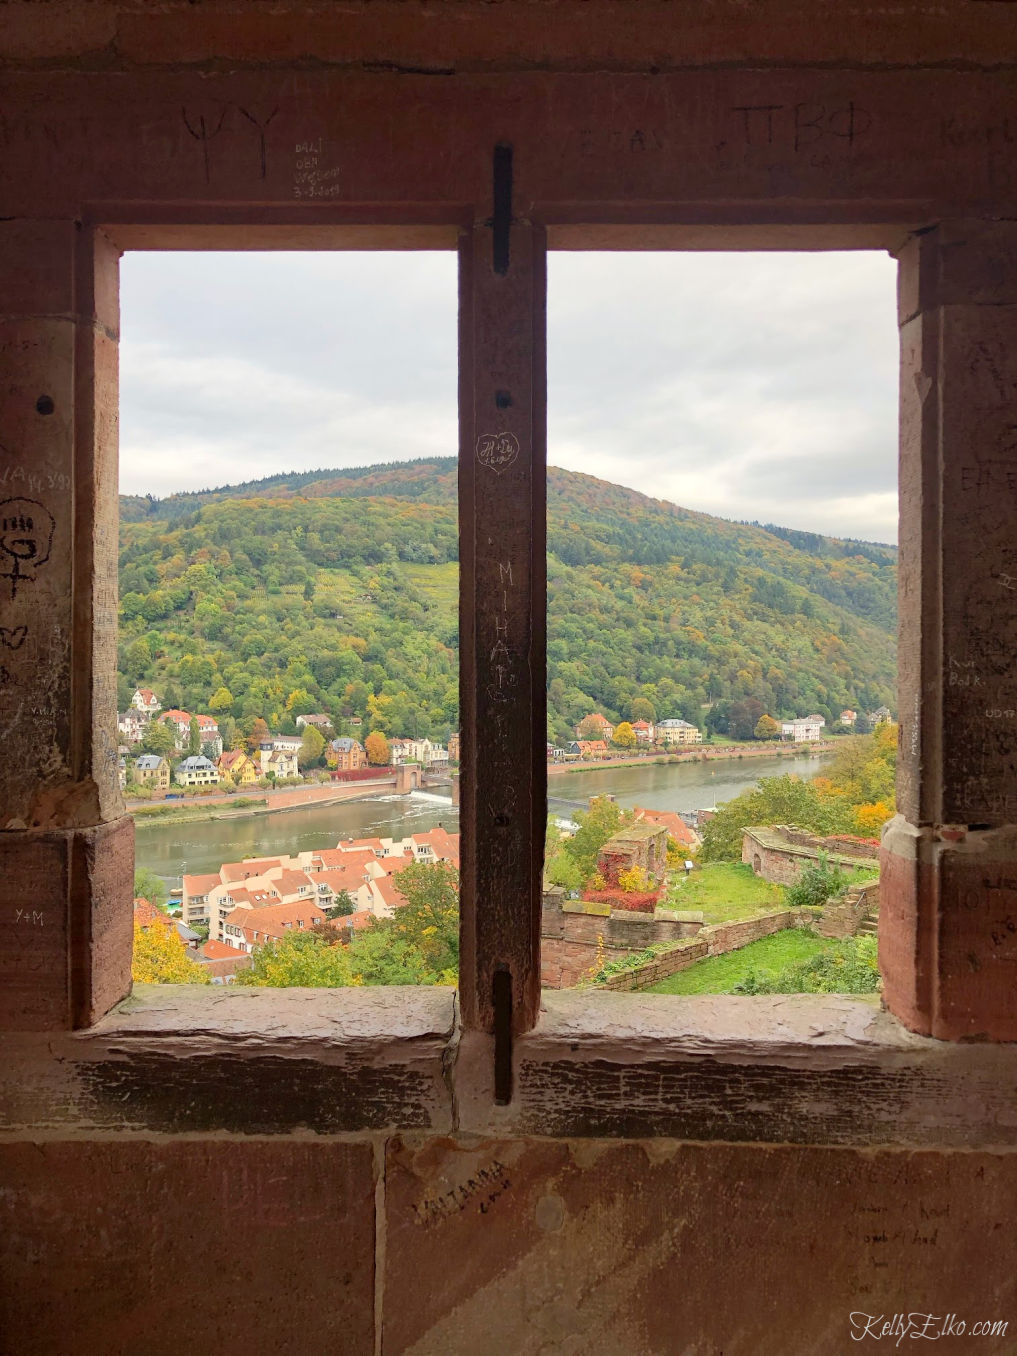 Heidelberg Germany view from the castle kellyelko.com #heidelberg #heidelbergcastle #germany #luxurytravel #travelblogger #travelblog #nekarriver #europeantravel #europe #castles 